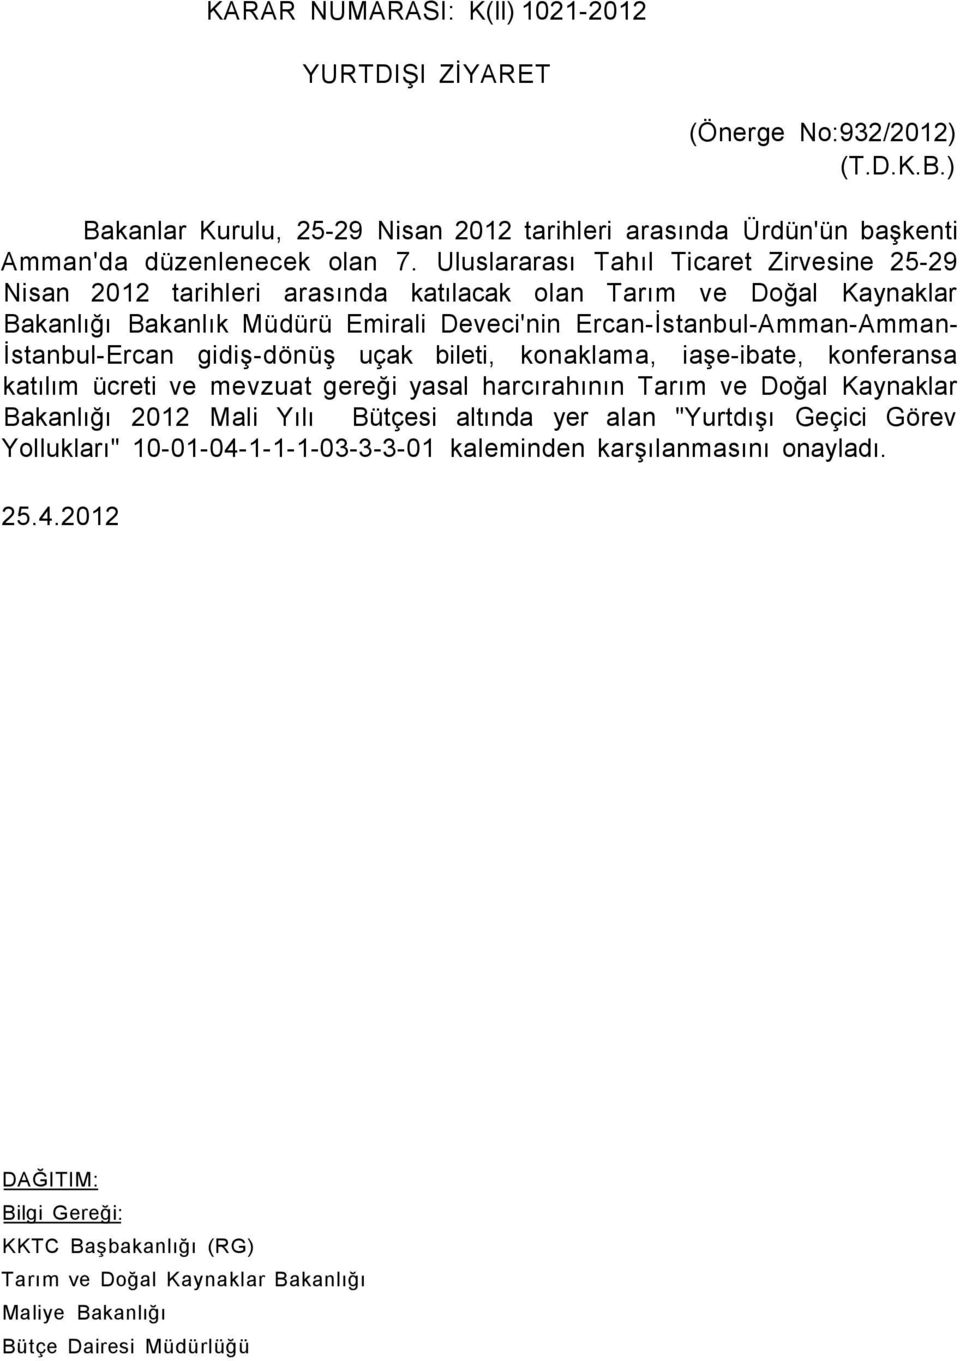 İstanbul-Ercan gidiş-dönüş uçak bileti, konaklama, iaşe-ibate, konferansa katılım ücreti ve mevzuat gereği yasal harcırahının Tarım ve Doğal Kaynaklar Bakanlığı 2012 Mali Yılı Bütçesi